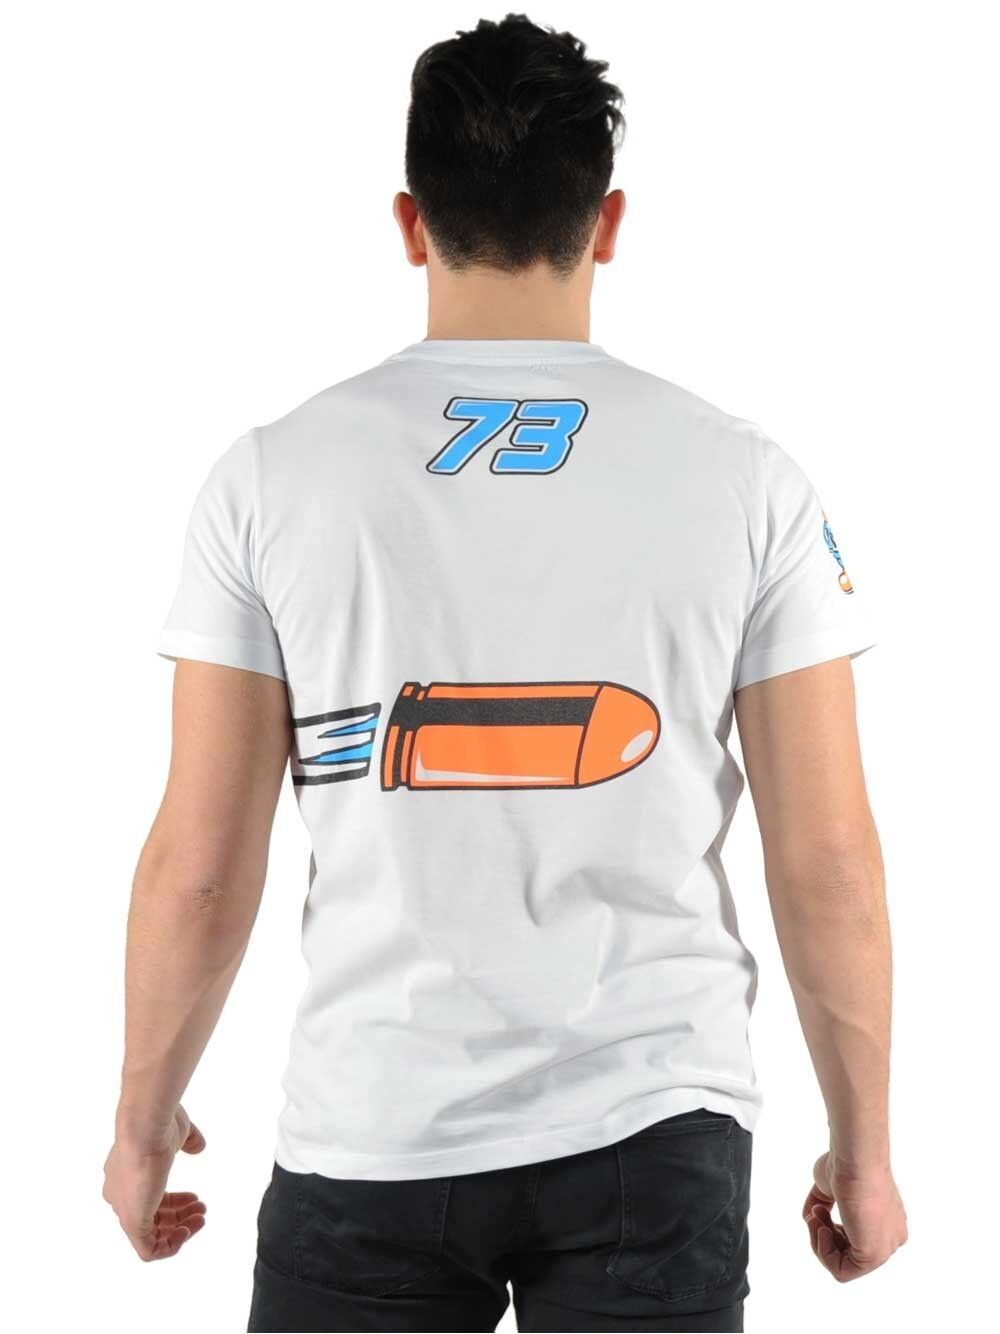 New Official Alex Marquez Pistolero T Shirt - 16 32004